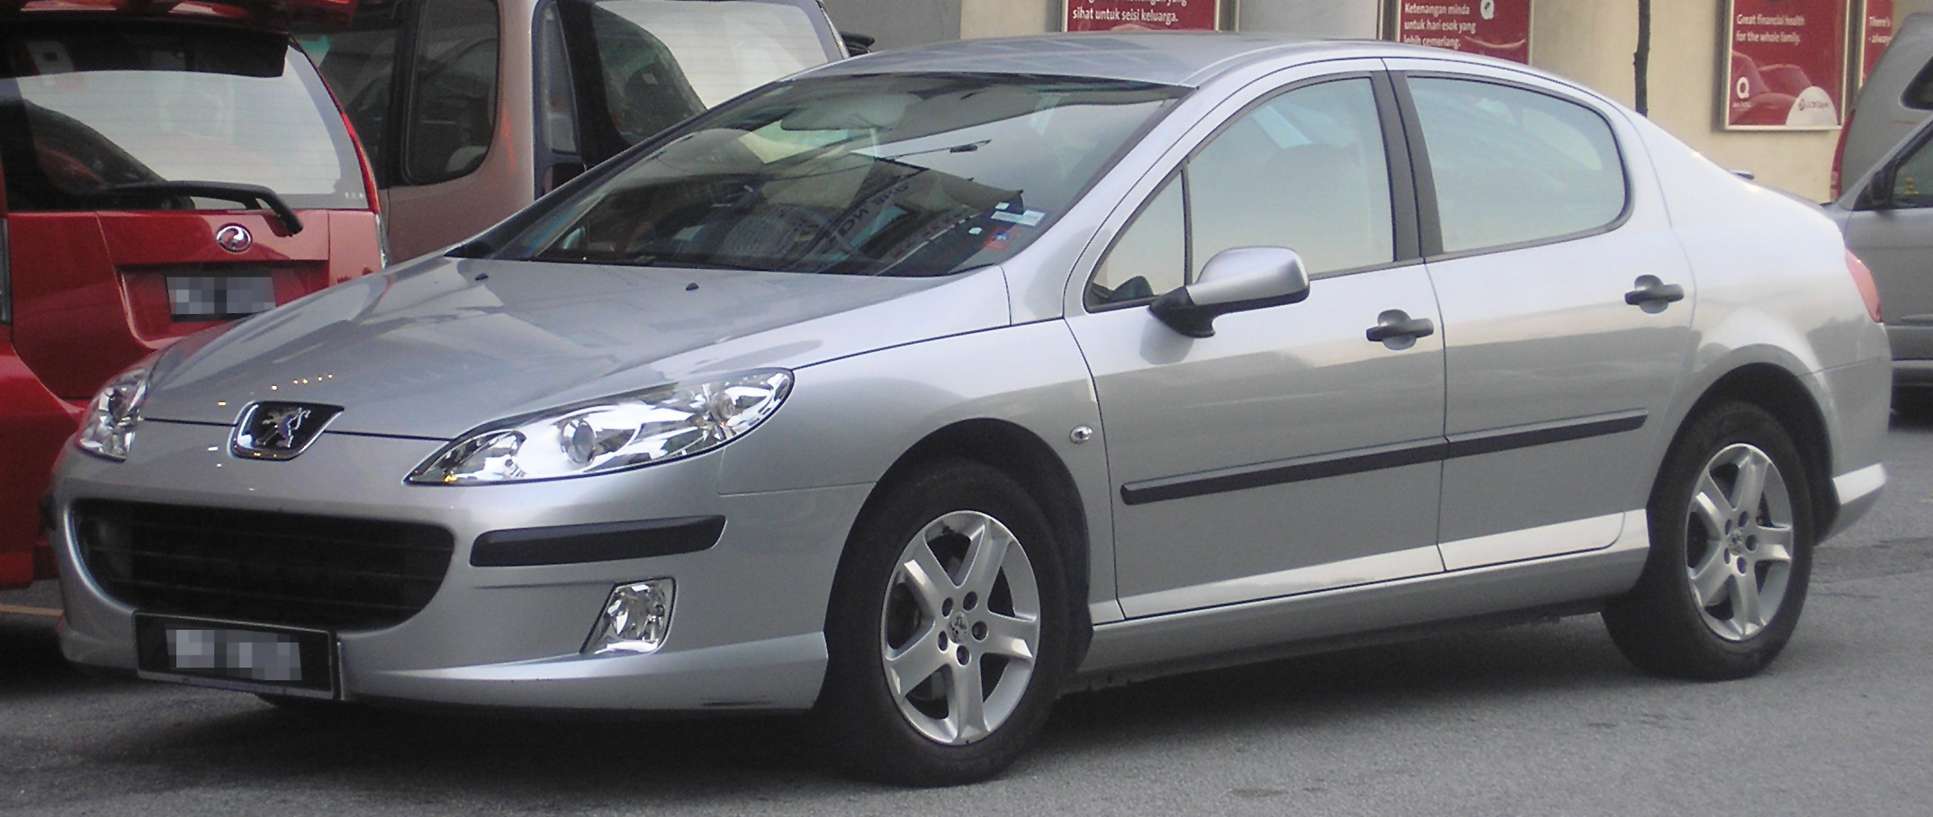 Peugeot 407 #8361907